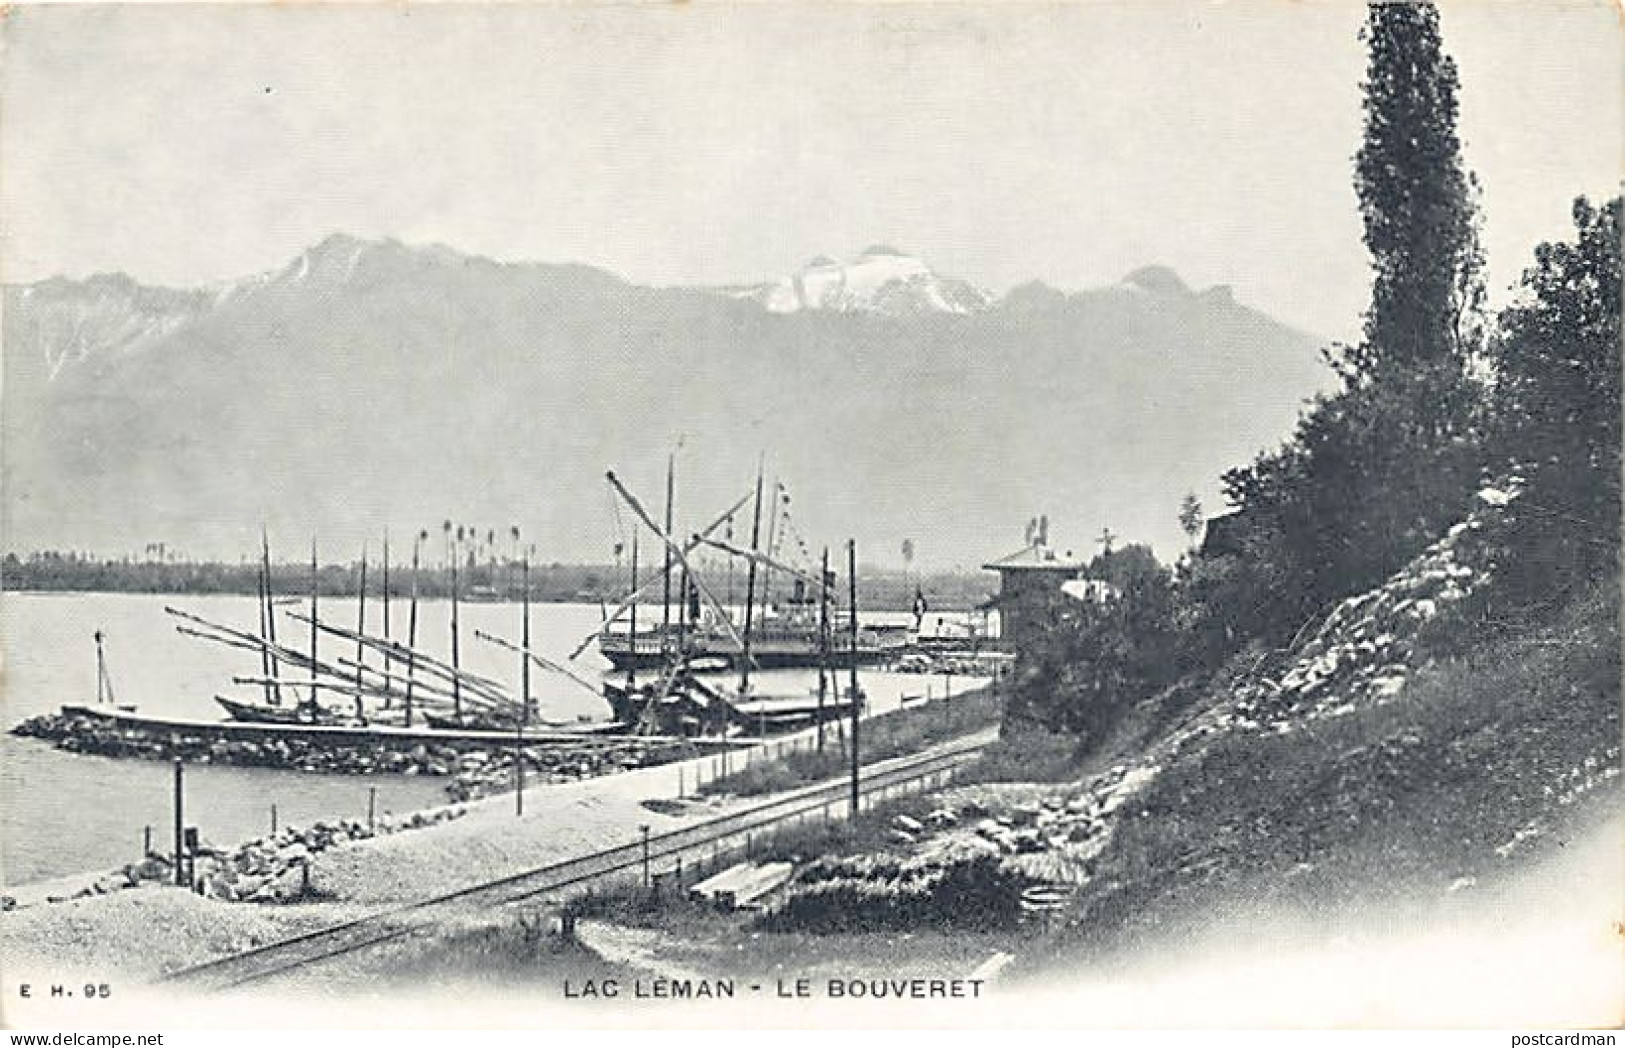 Suisse - Lac Léman (VS) Le Bouveret - Ed. E. H. 95 - Lake Geneva